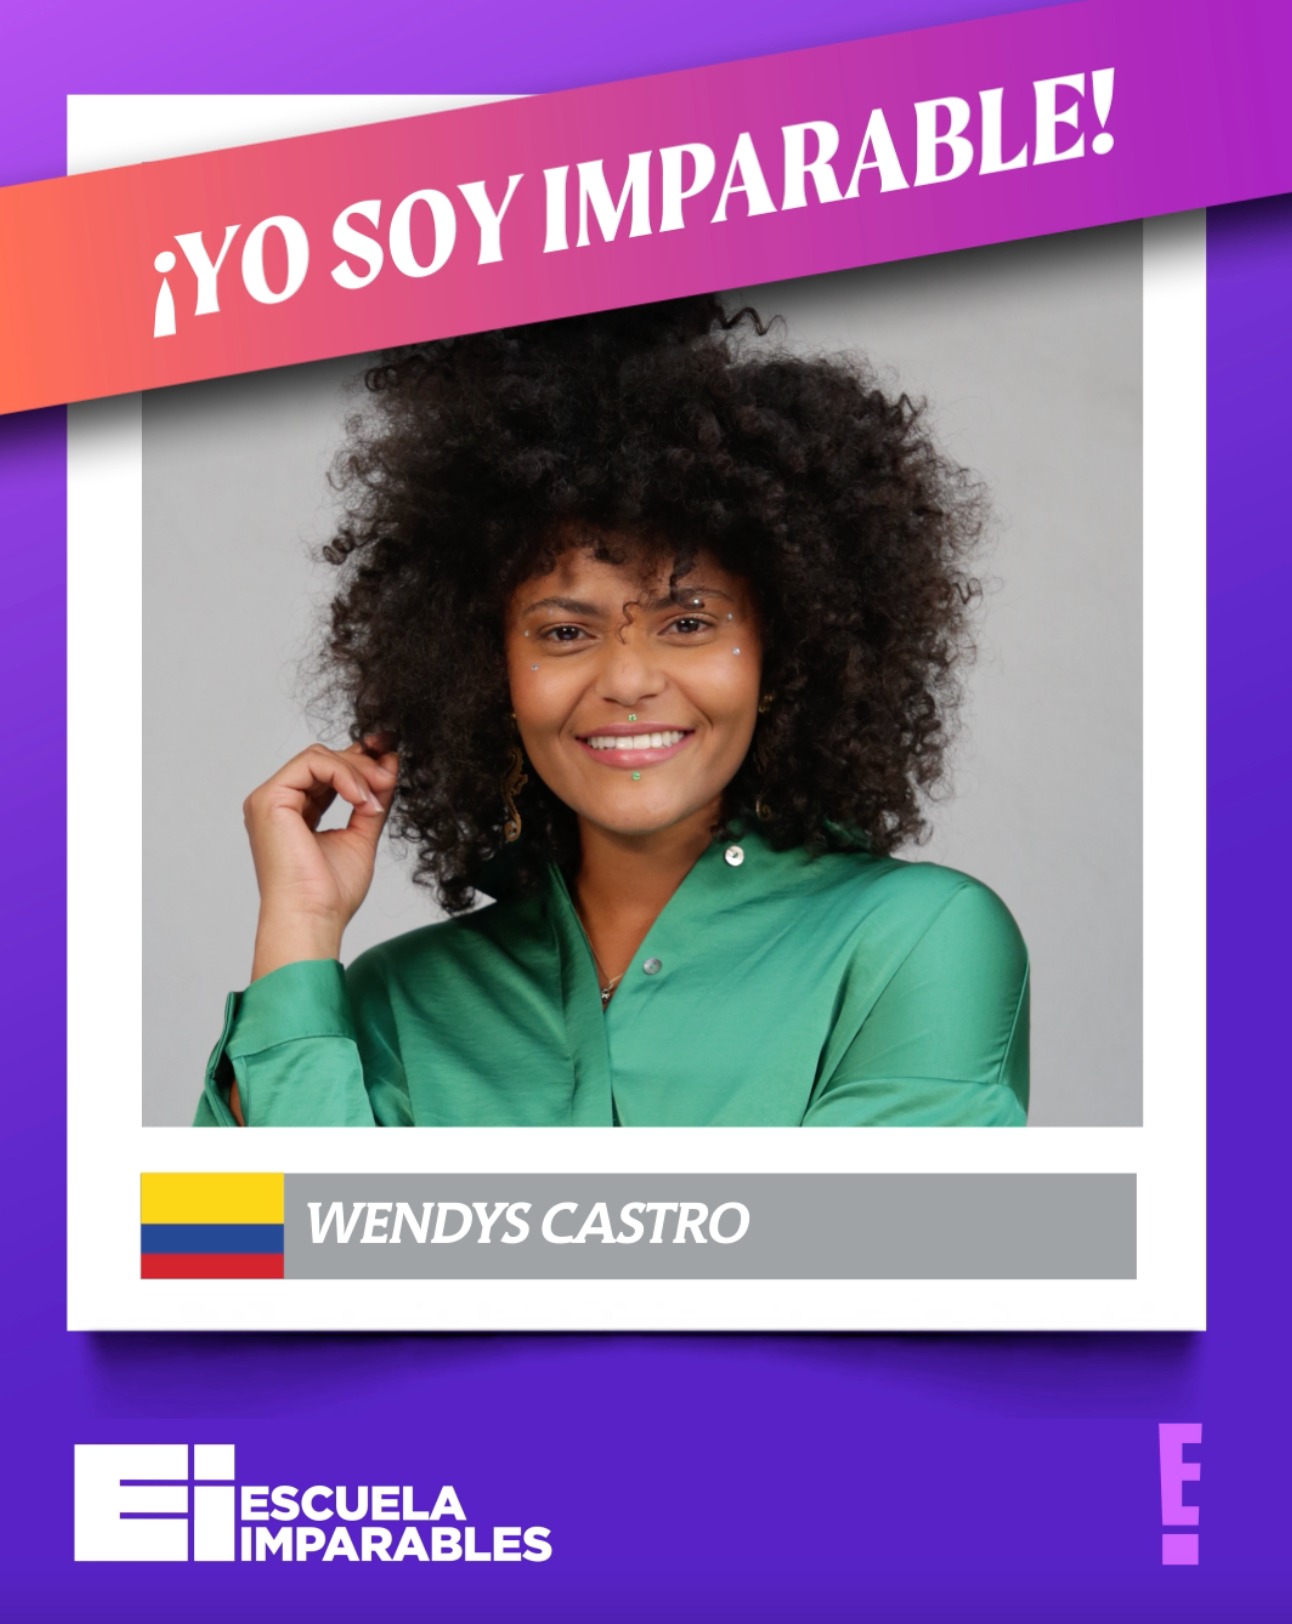 Wendys Castro